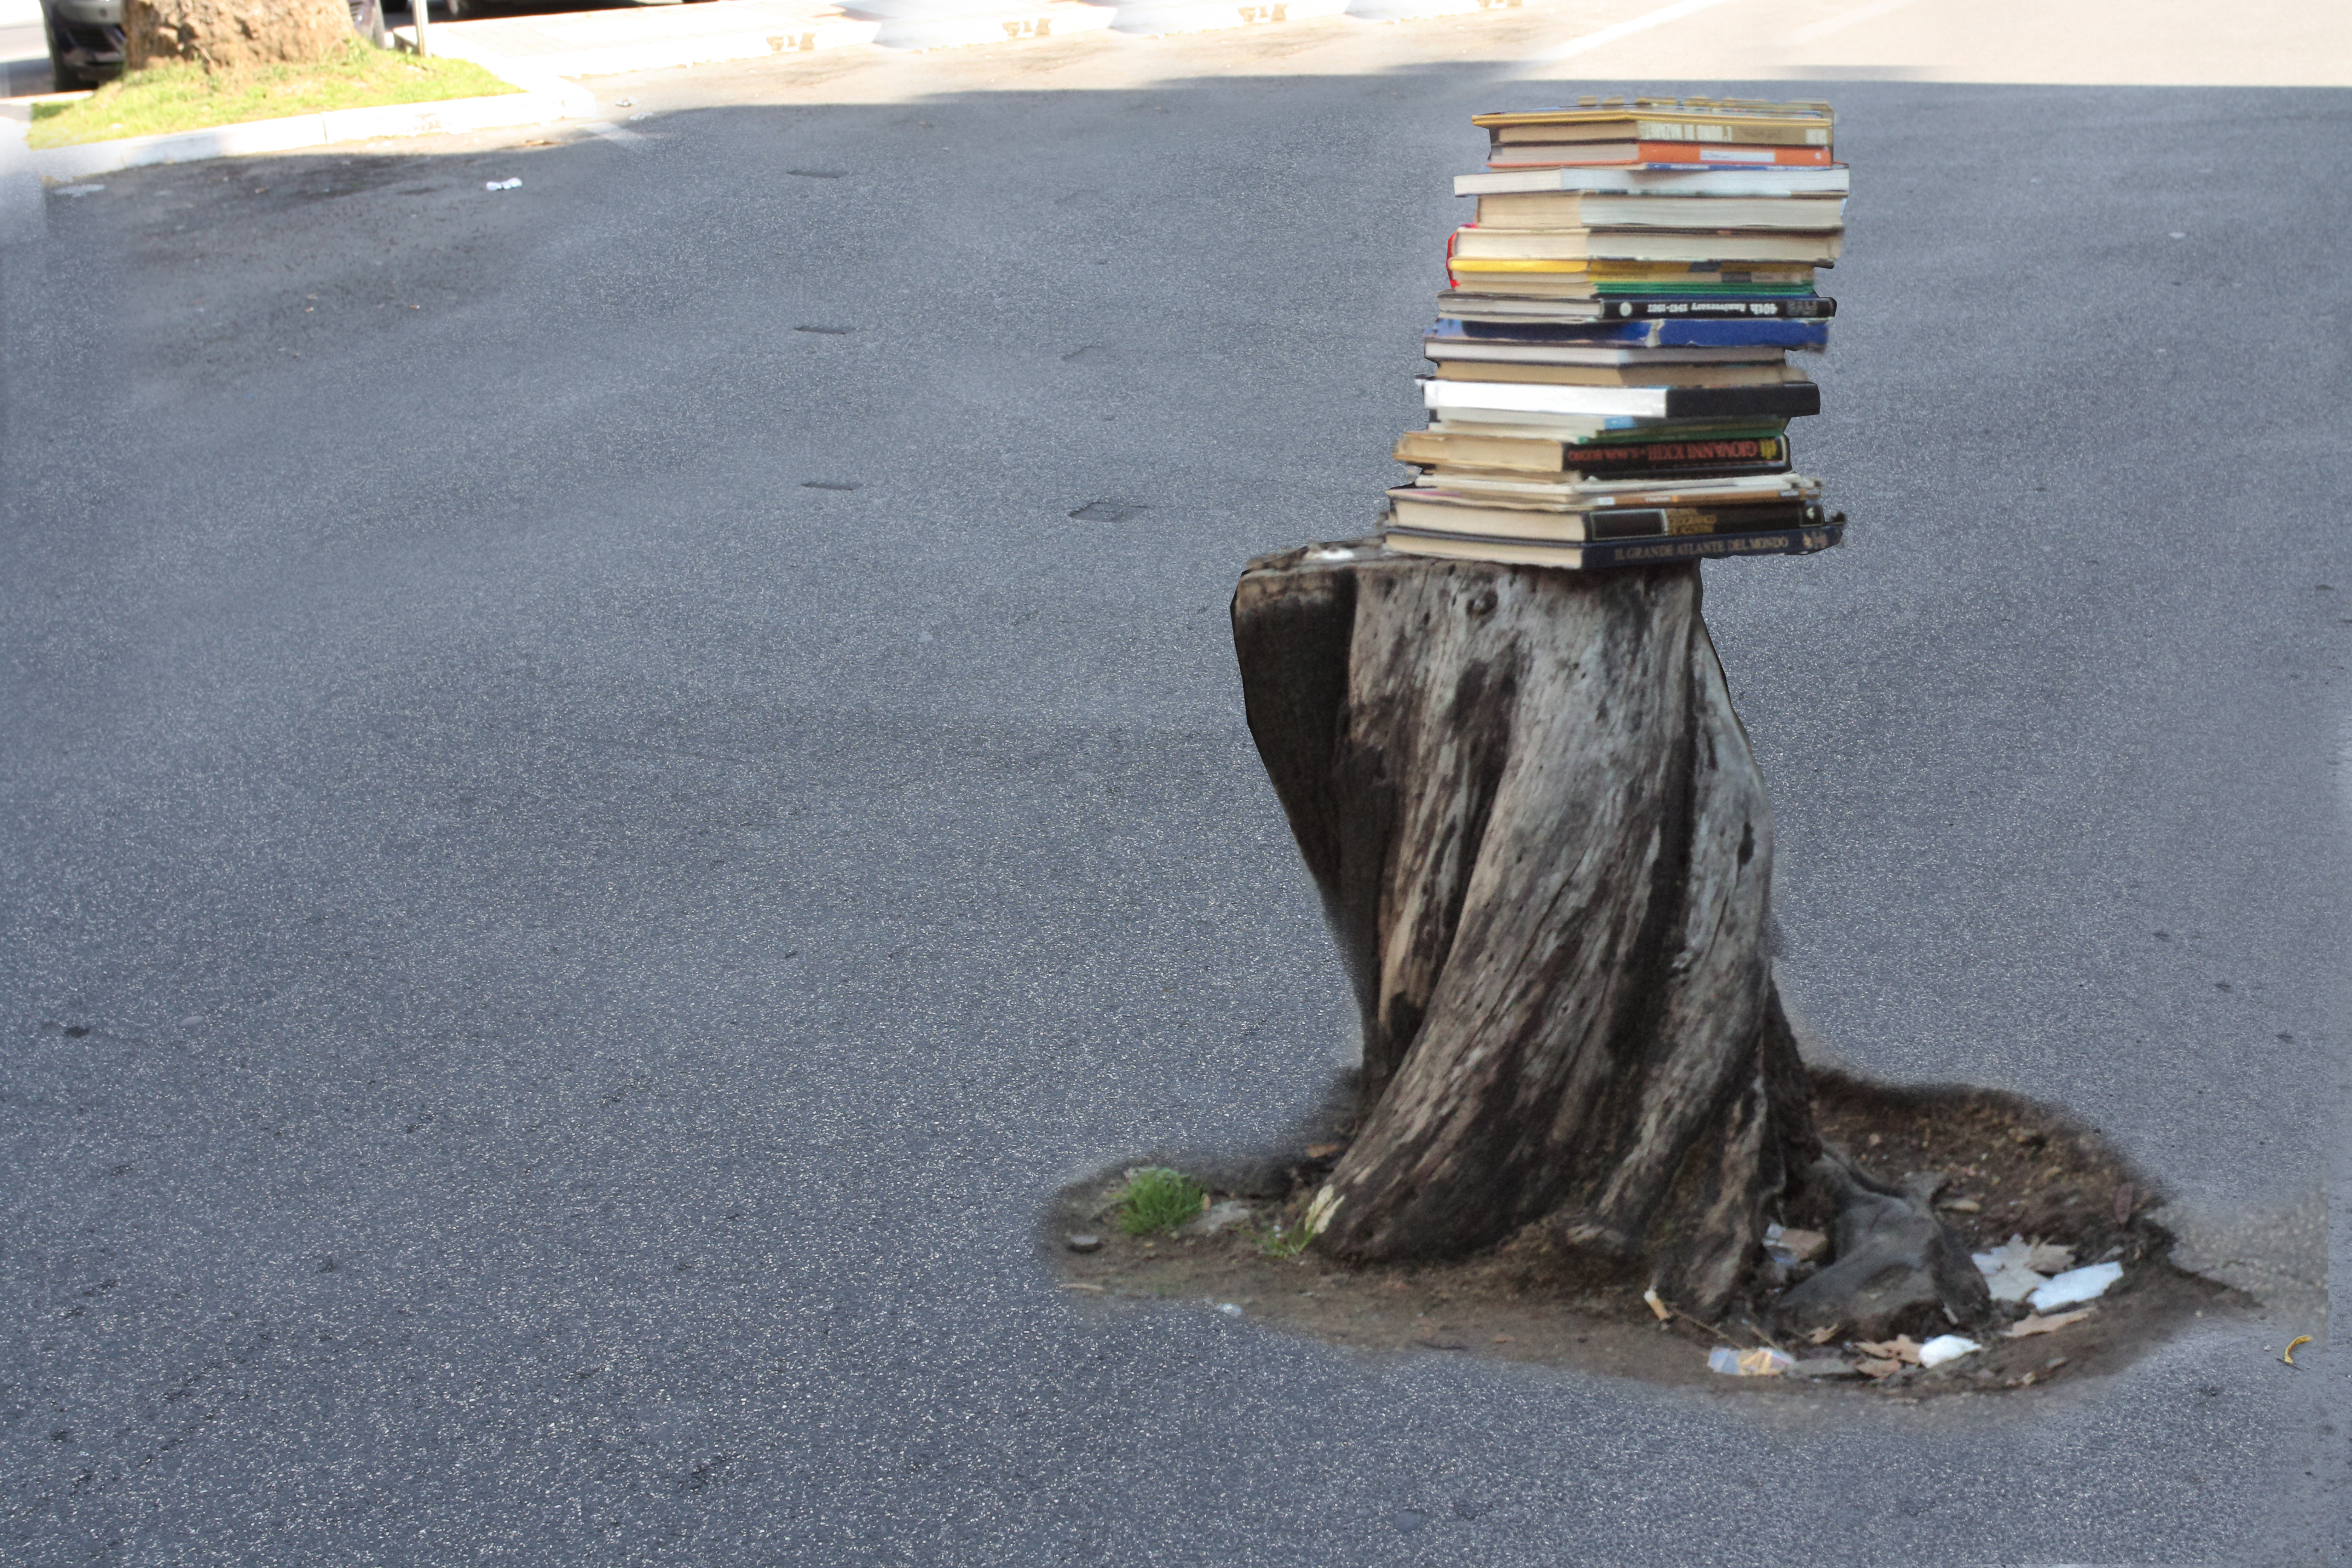 L' importanza dei libri, per far crescere l' albero composto dai rami dell' ascolto e dell' incontro.